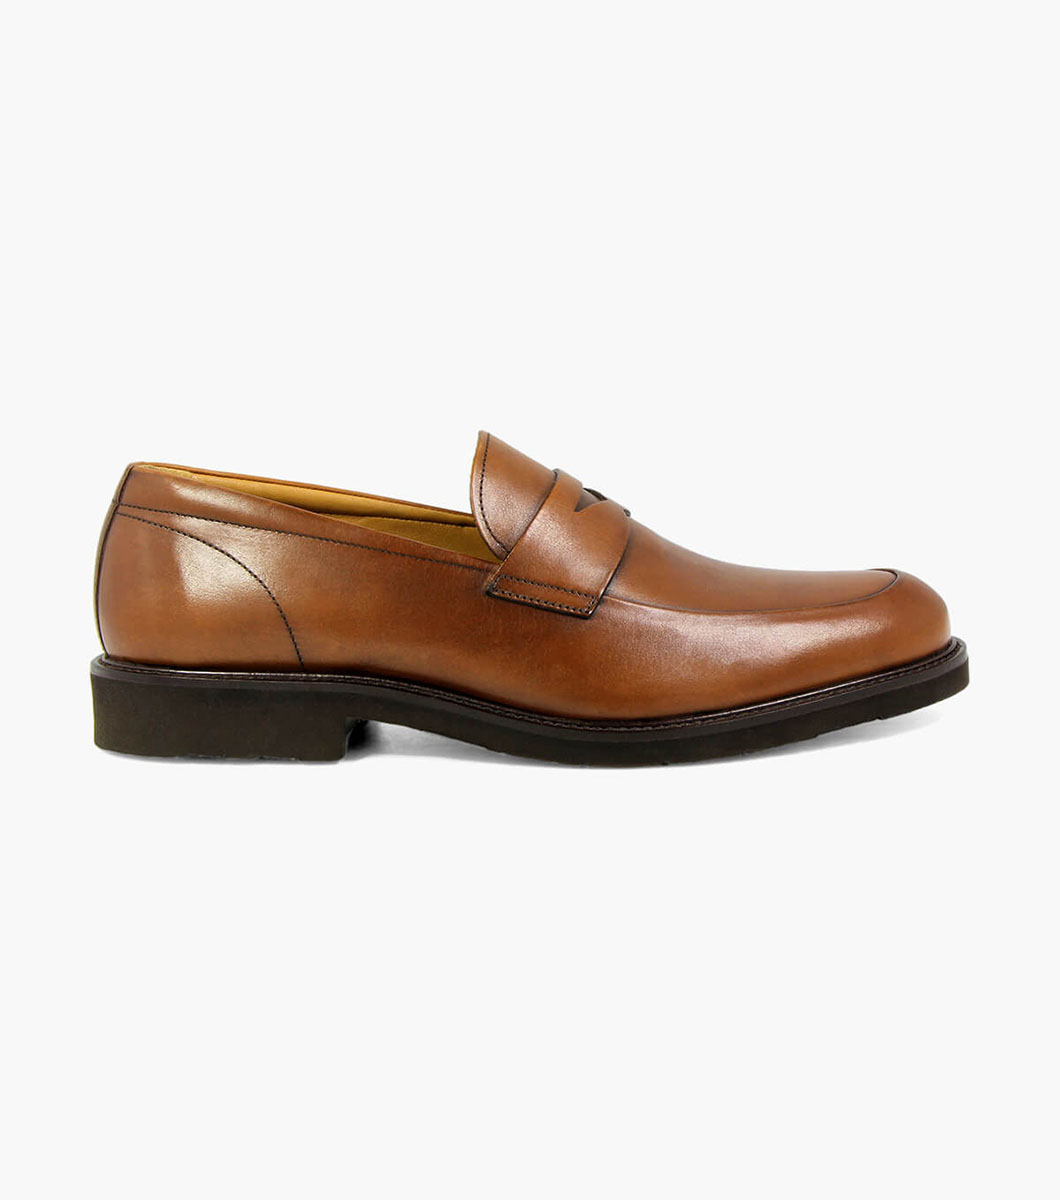 Men’s Dress Shoes | Cognac Moc Toe Penny Loafer | Florsheim Gallo